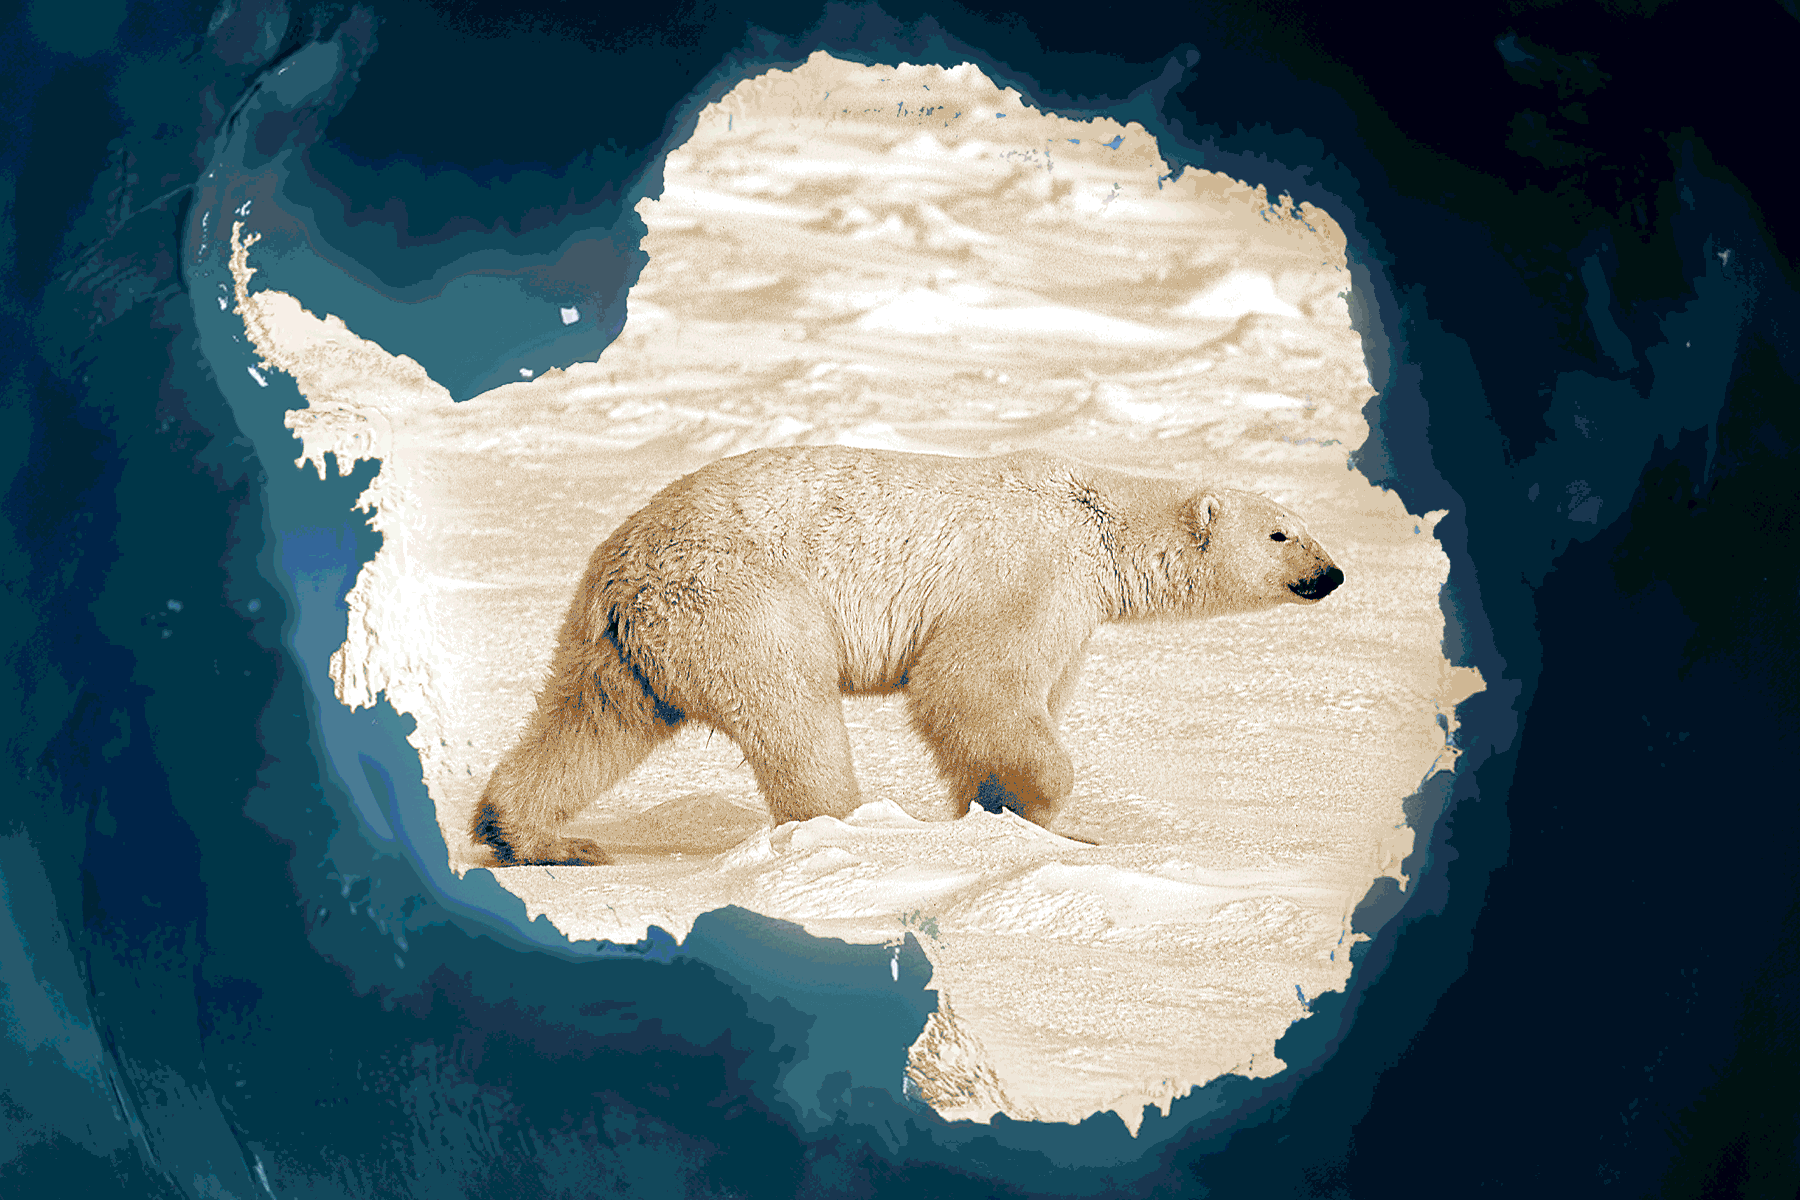 Liên Hiệp Quốc cho rằng băng tan ở Bắc Cực là dấu hiệu chính của biến đổi khí hậu — thế nhưng, băng lại không tan